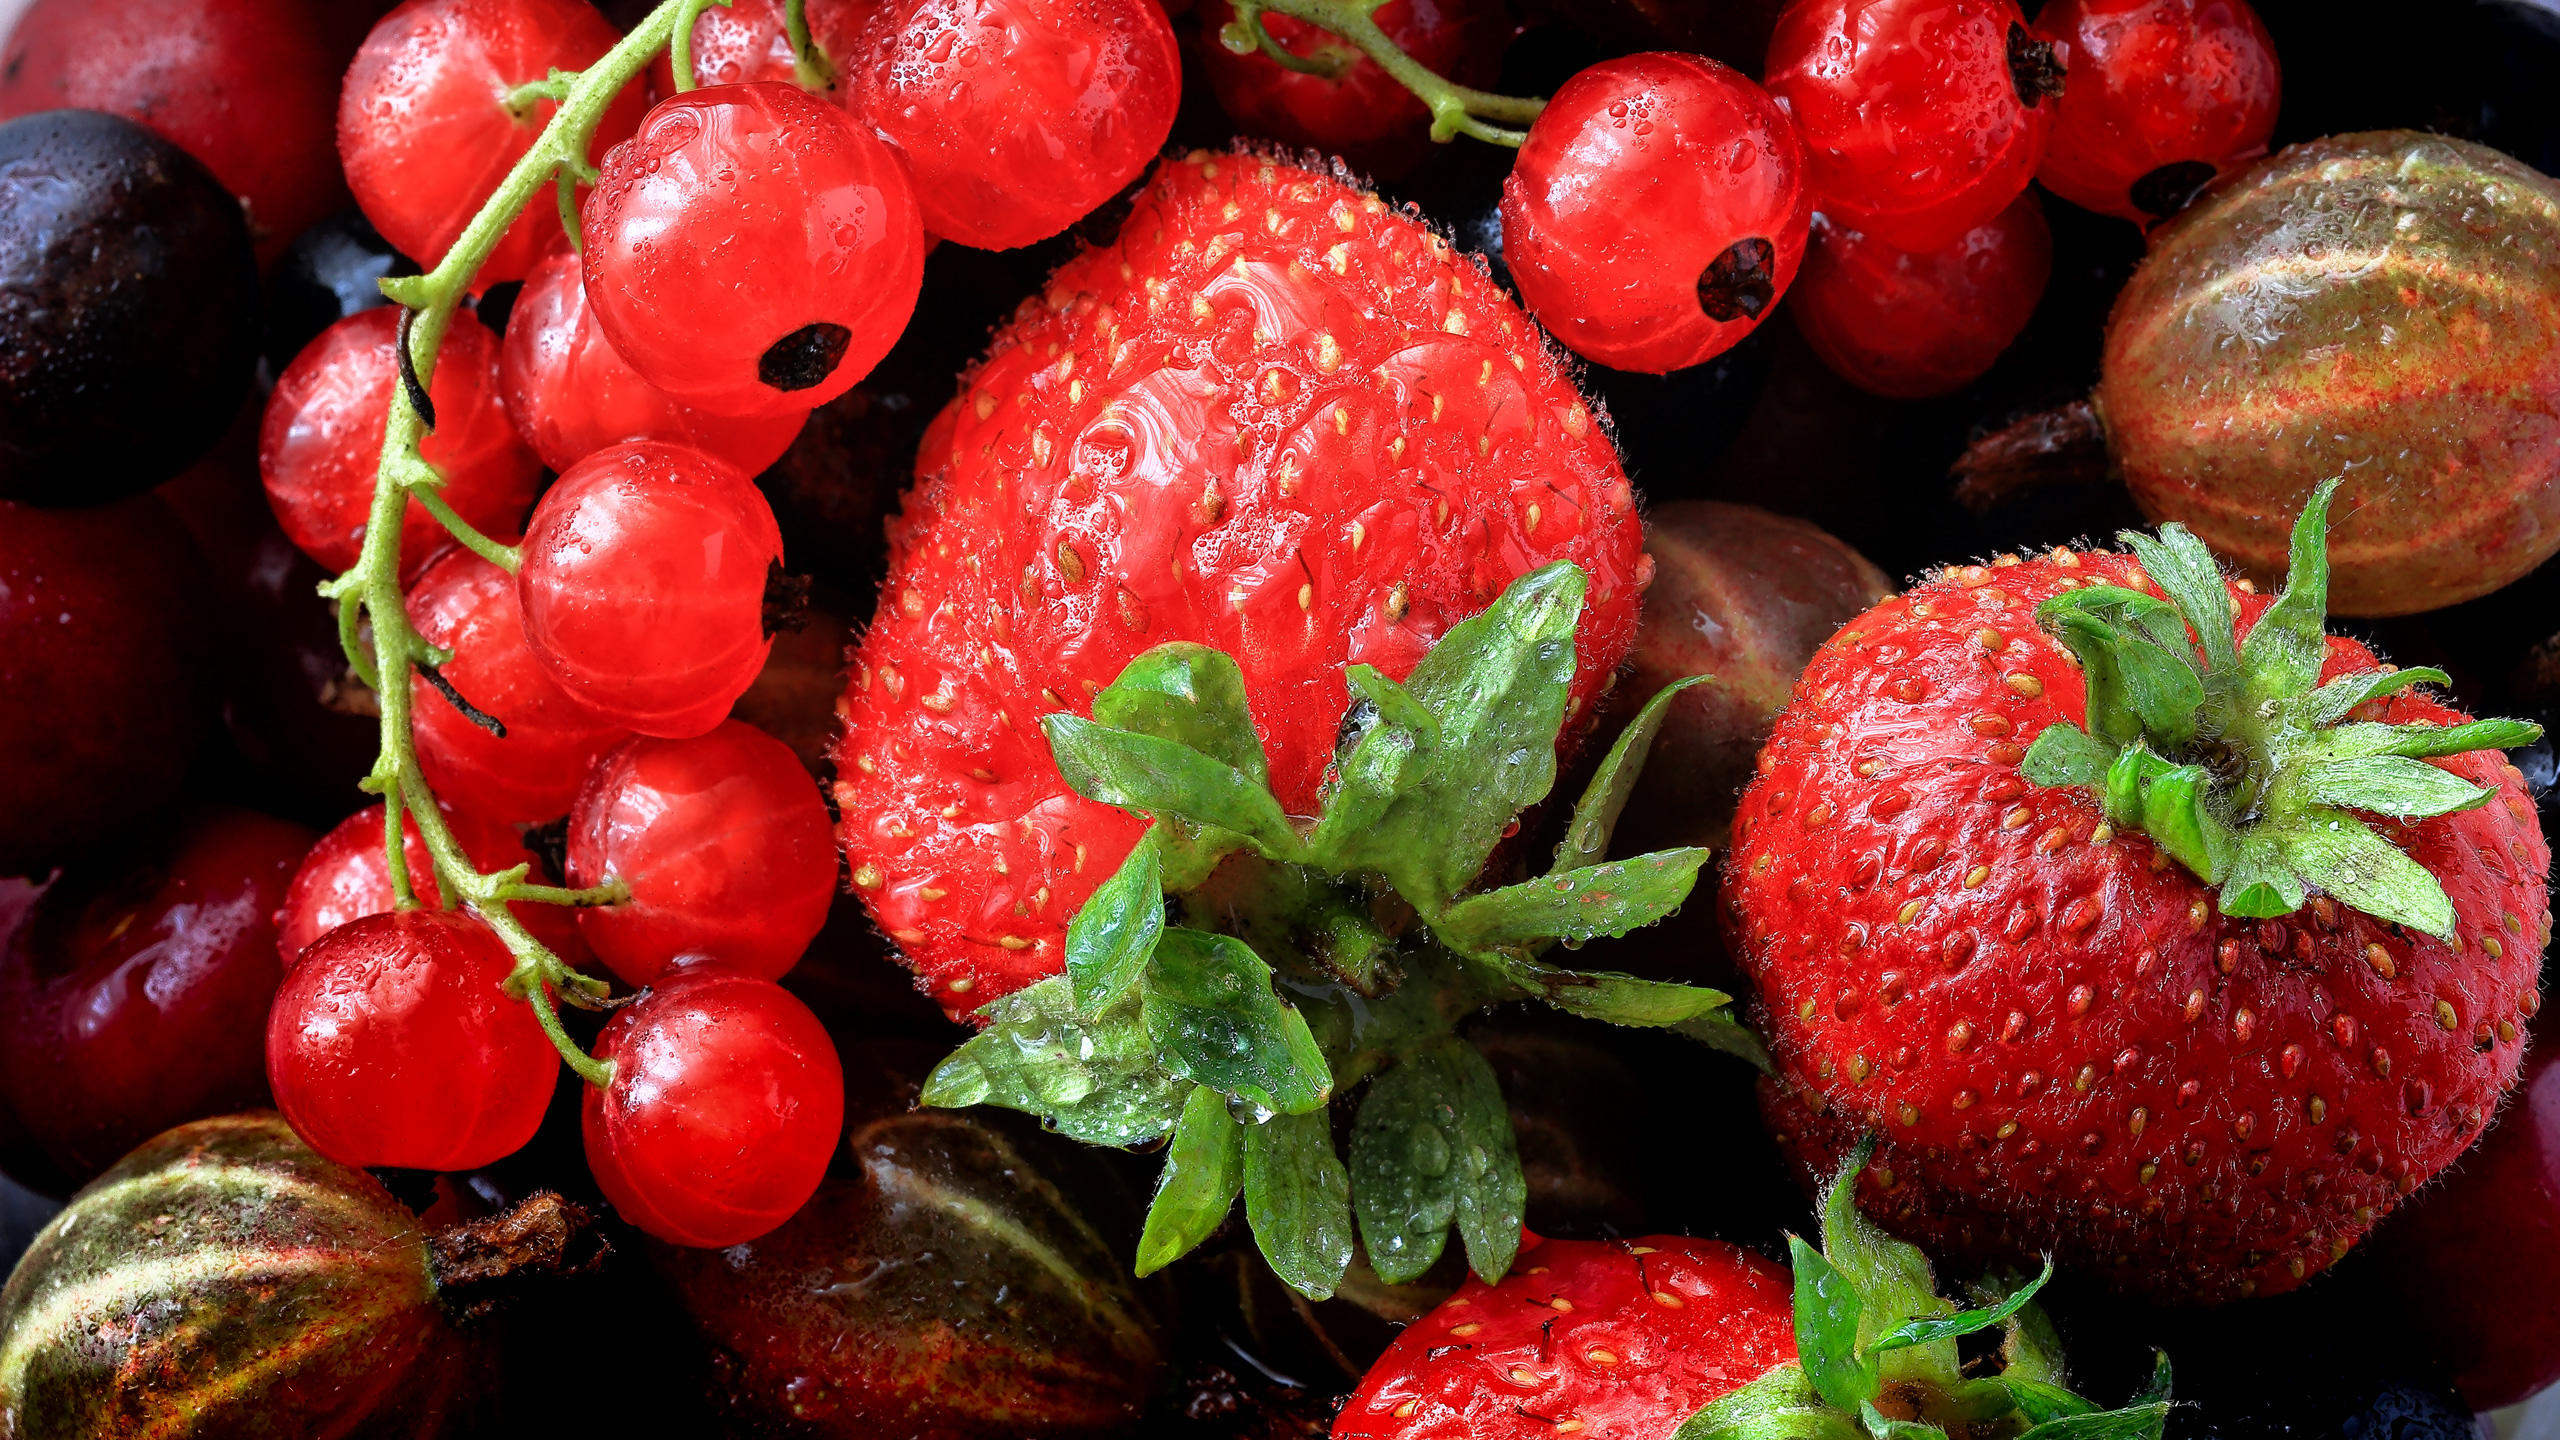 Wallpapers strawberries currants gooseberries on the desktop